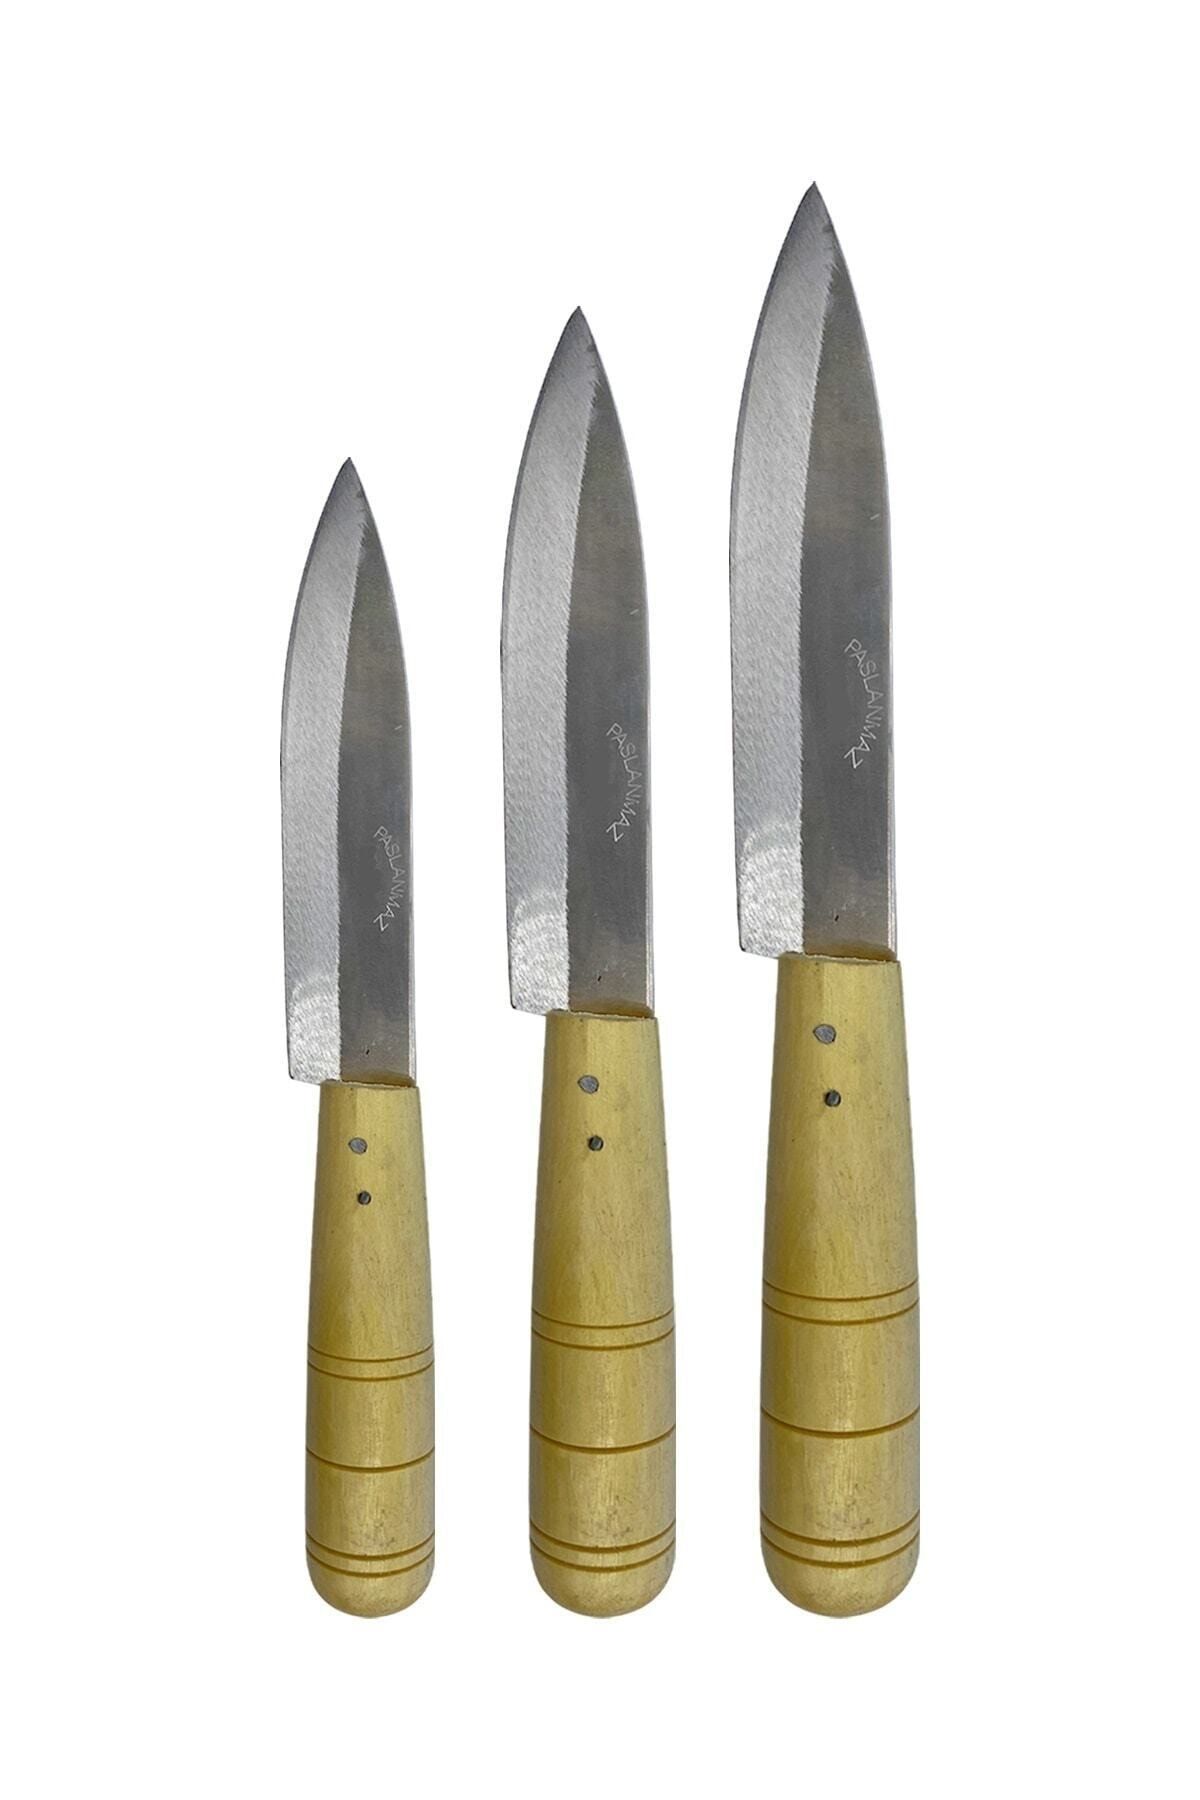 GÜZELYÜZ AVM Ahşap Saplı Mutfak Bıçağı Küçük 18cm Orta 22cm Büyük 26cm 3adet Set Keskin Kaliteli 1.sınıf Ev Bıçak